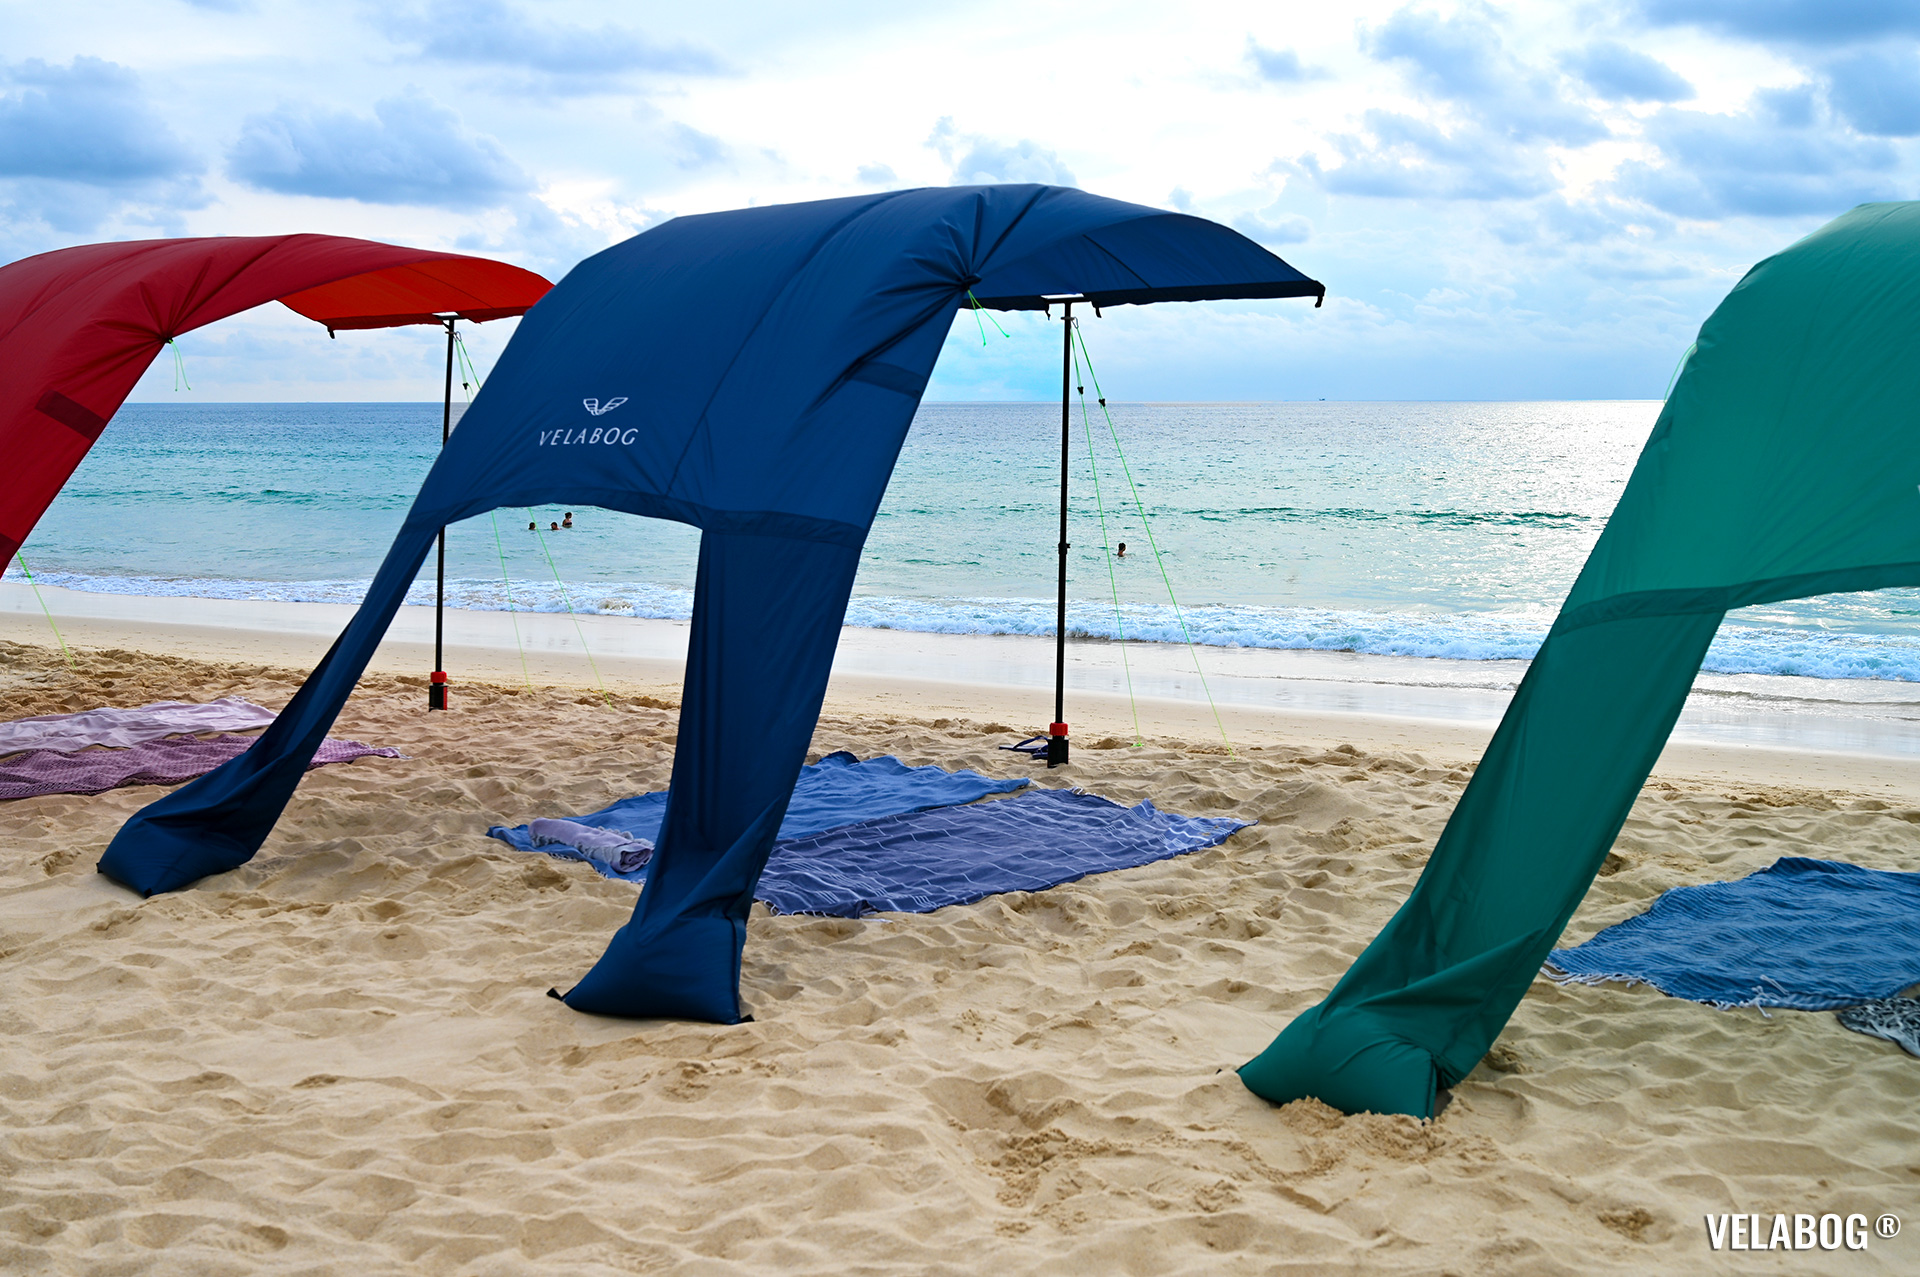 Drei Strand Sonnensegeln Strandzelte Velabog Breeze. Bester Sonnenschutz am windigen Strand. Beste Alternative zu Strandschirmen, Strandzelte und Strandmuscheln. Test Strand Sonnensegel Aufbauoption beim leichten bis starken Wind.